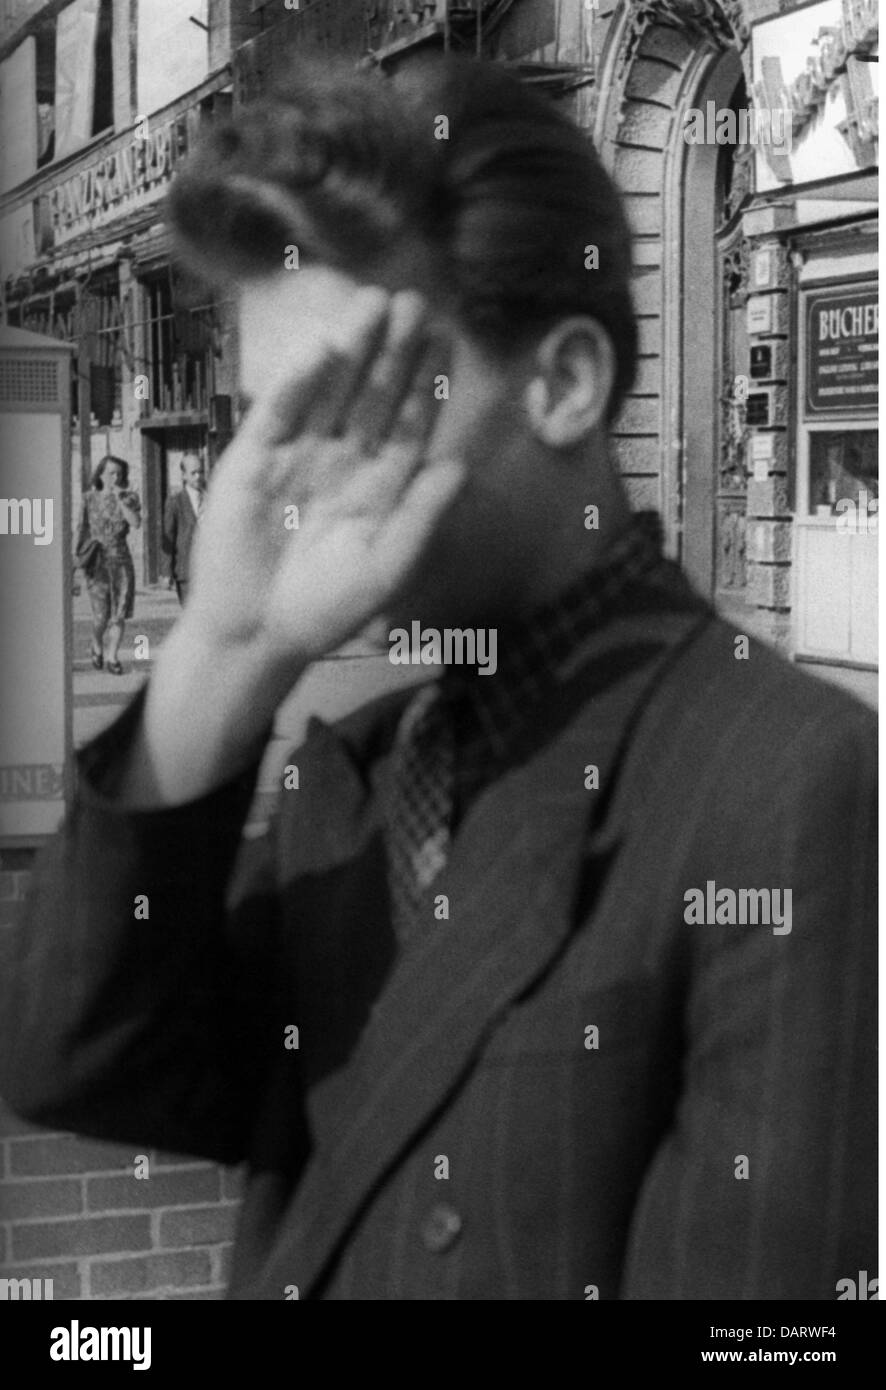 Période d'après-guerre, marché noir, Allemagne, Berlin, arrêté le marketeur noir Karl L., secteur soviétique, novembre 1947, droits additionnels-Clearences-non disponible Banque D'Images